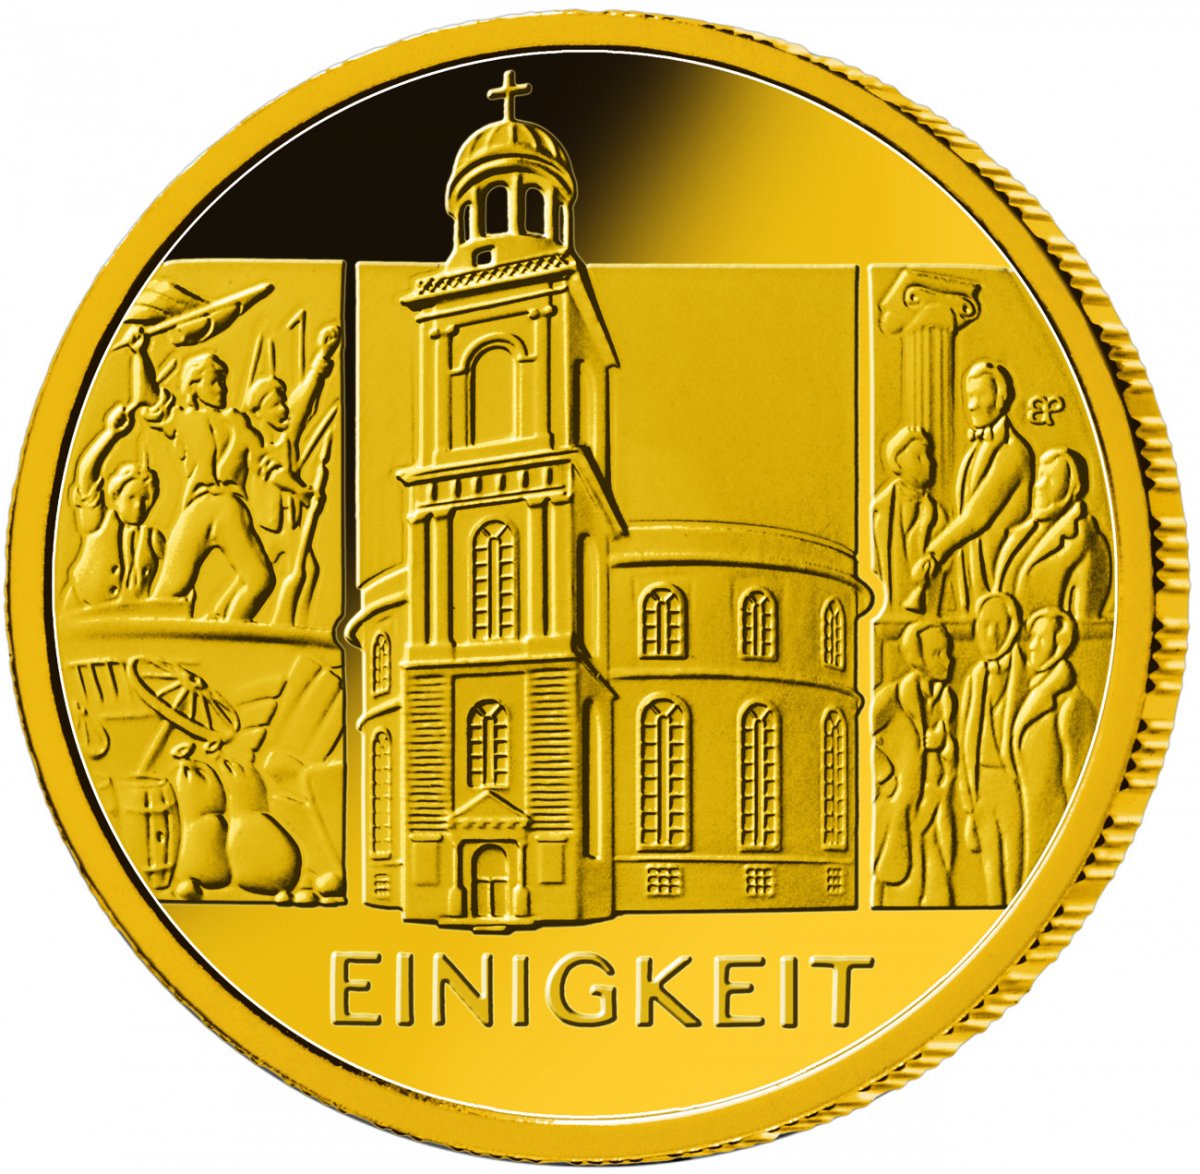 100 euro gold coin 2020 "Säulen der Demokratie - Einigkeit" 